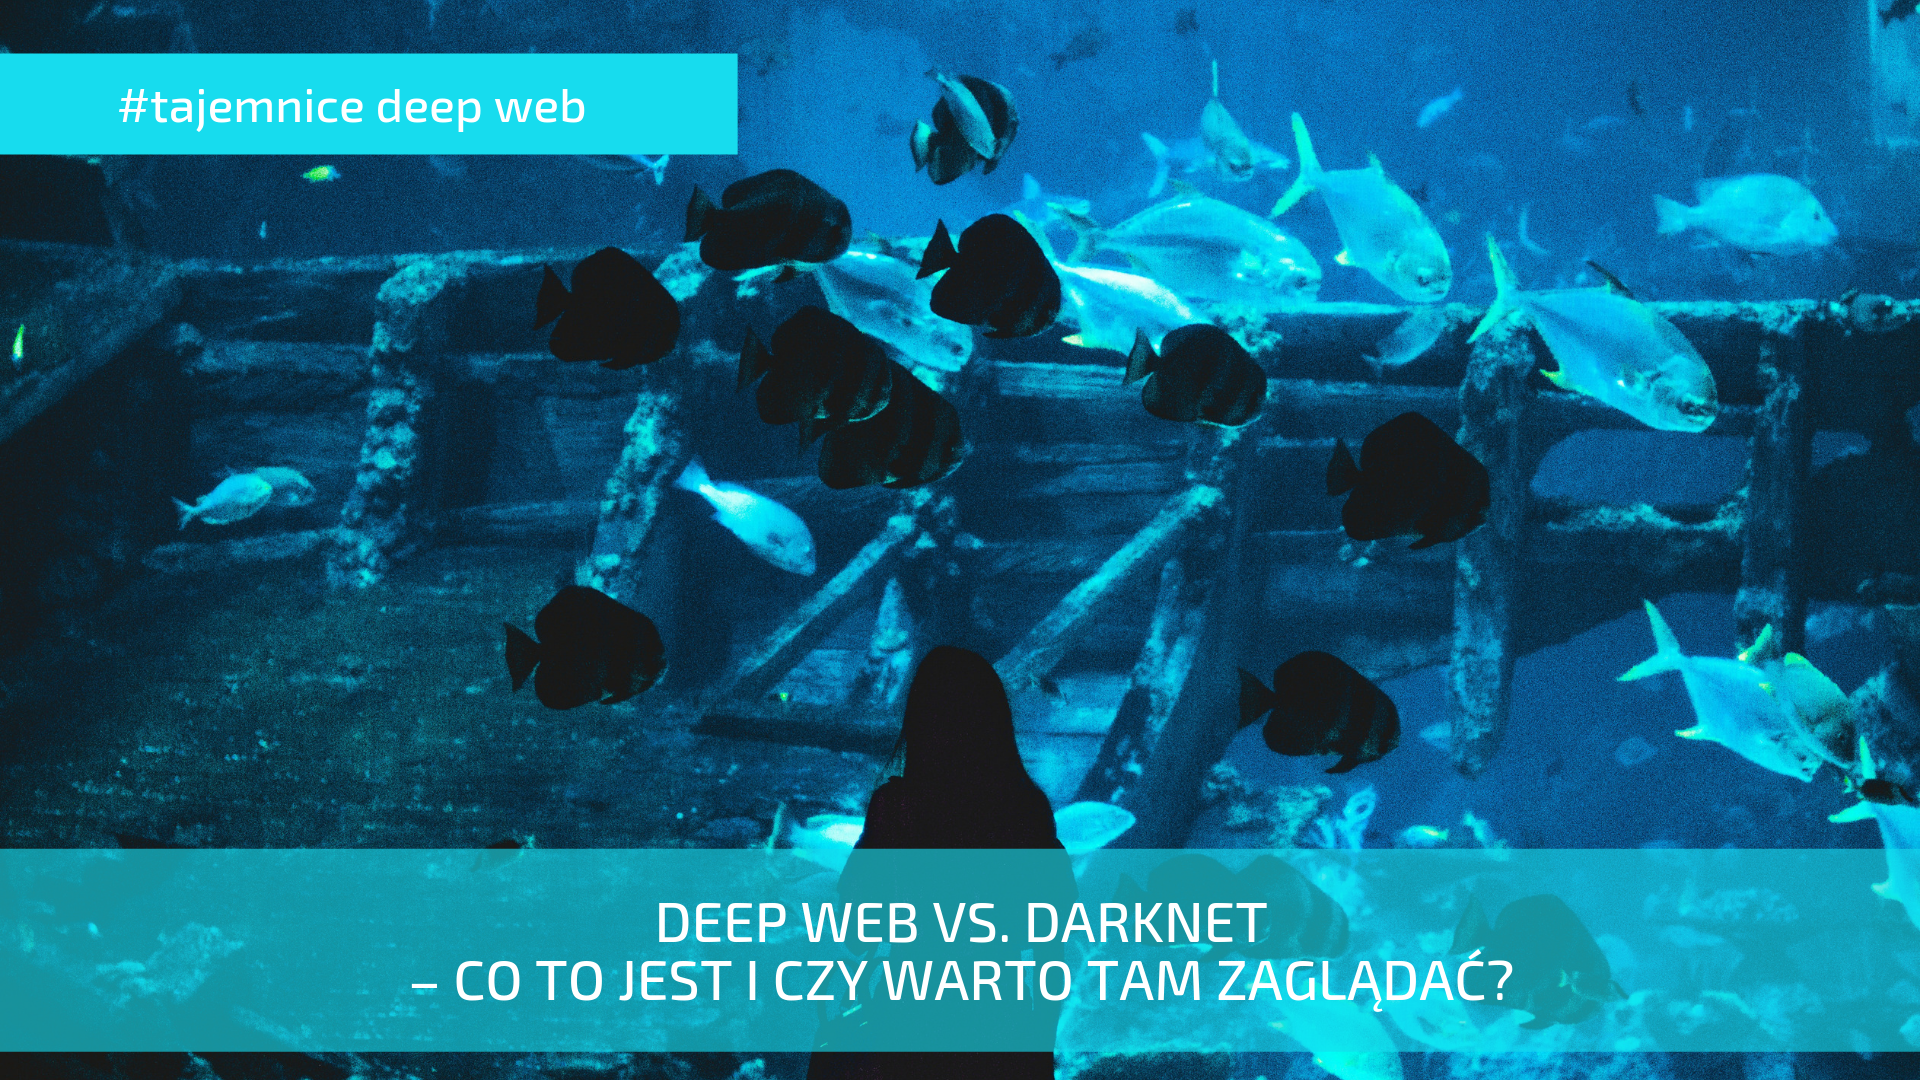 deeb web vs darknet